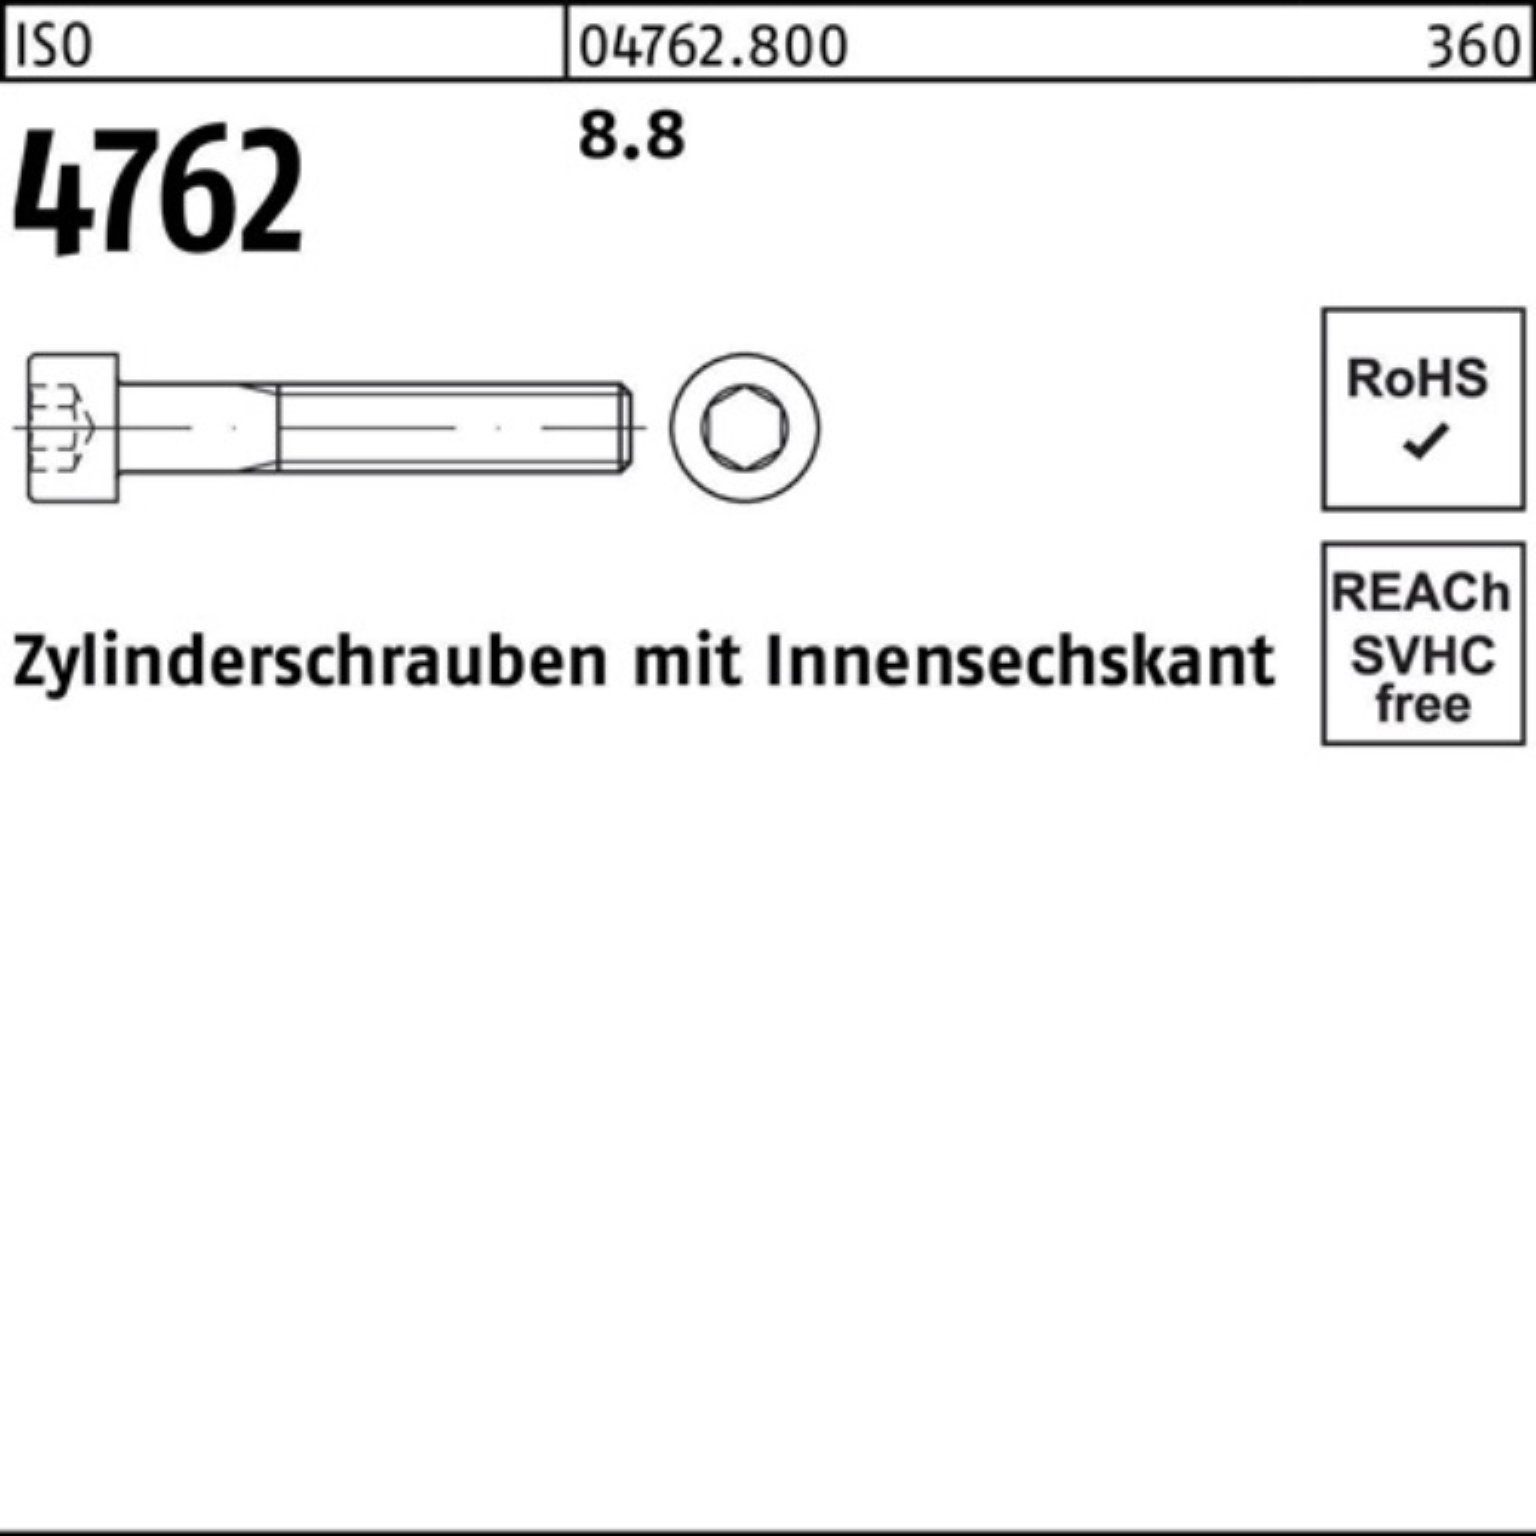 Pack 190 1 M36x 8.8 Reyher I Zylinderschraube 100er Innen-6kt ISO Stück Zylinderschraube 4762